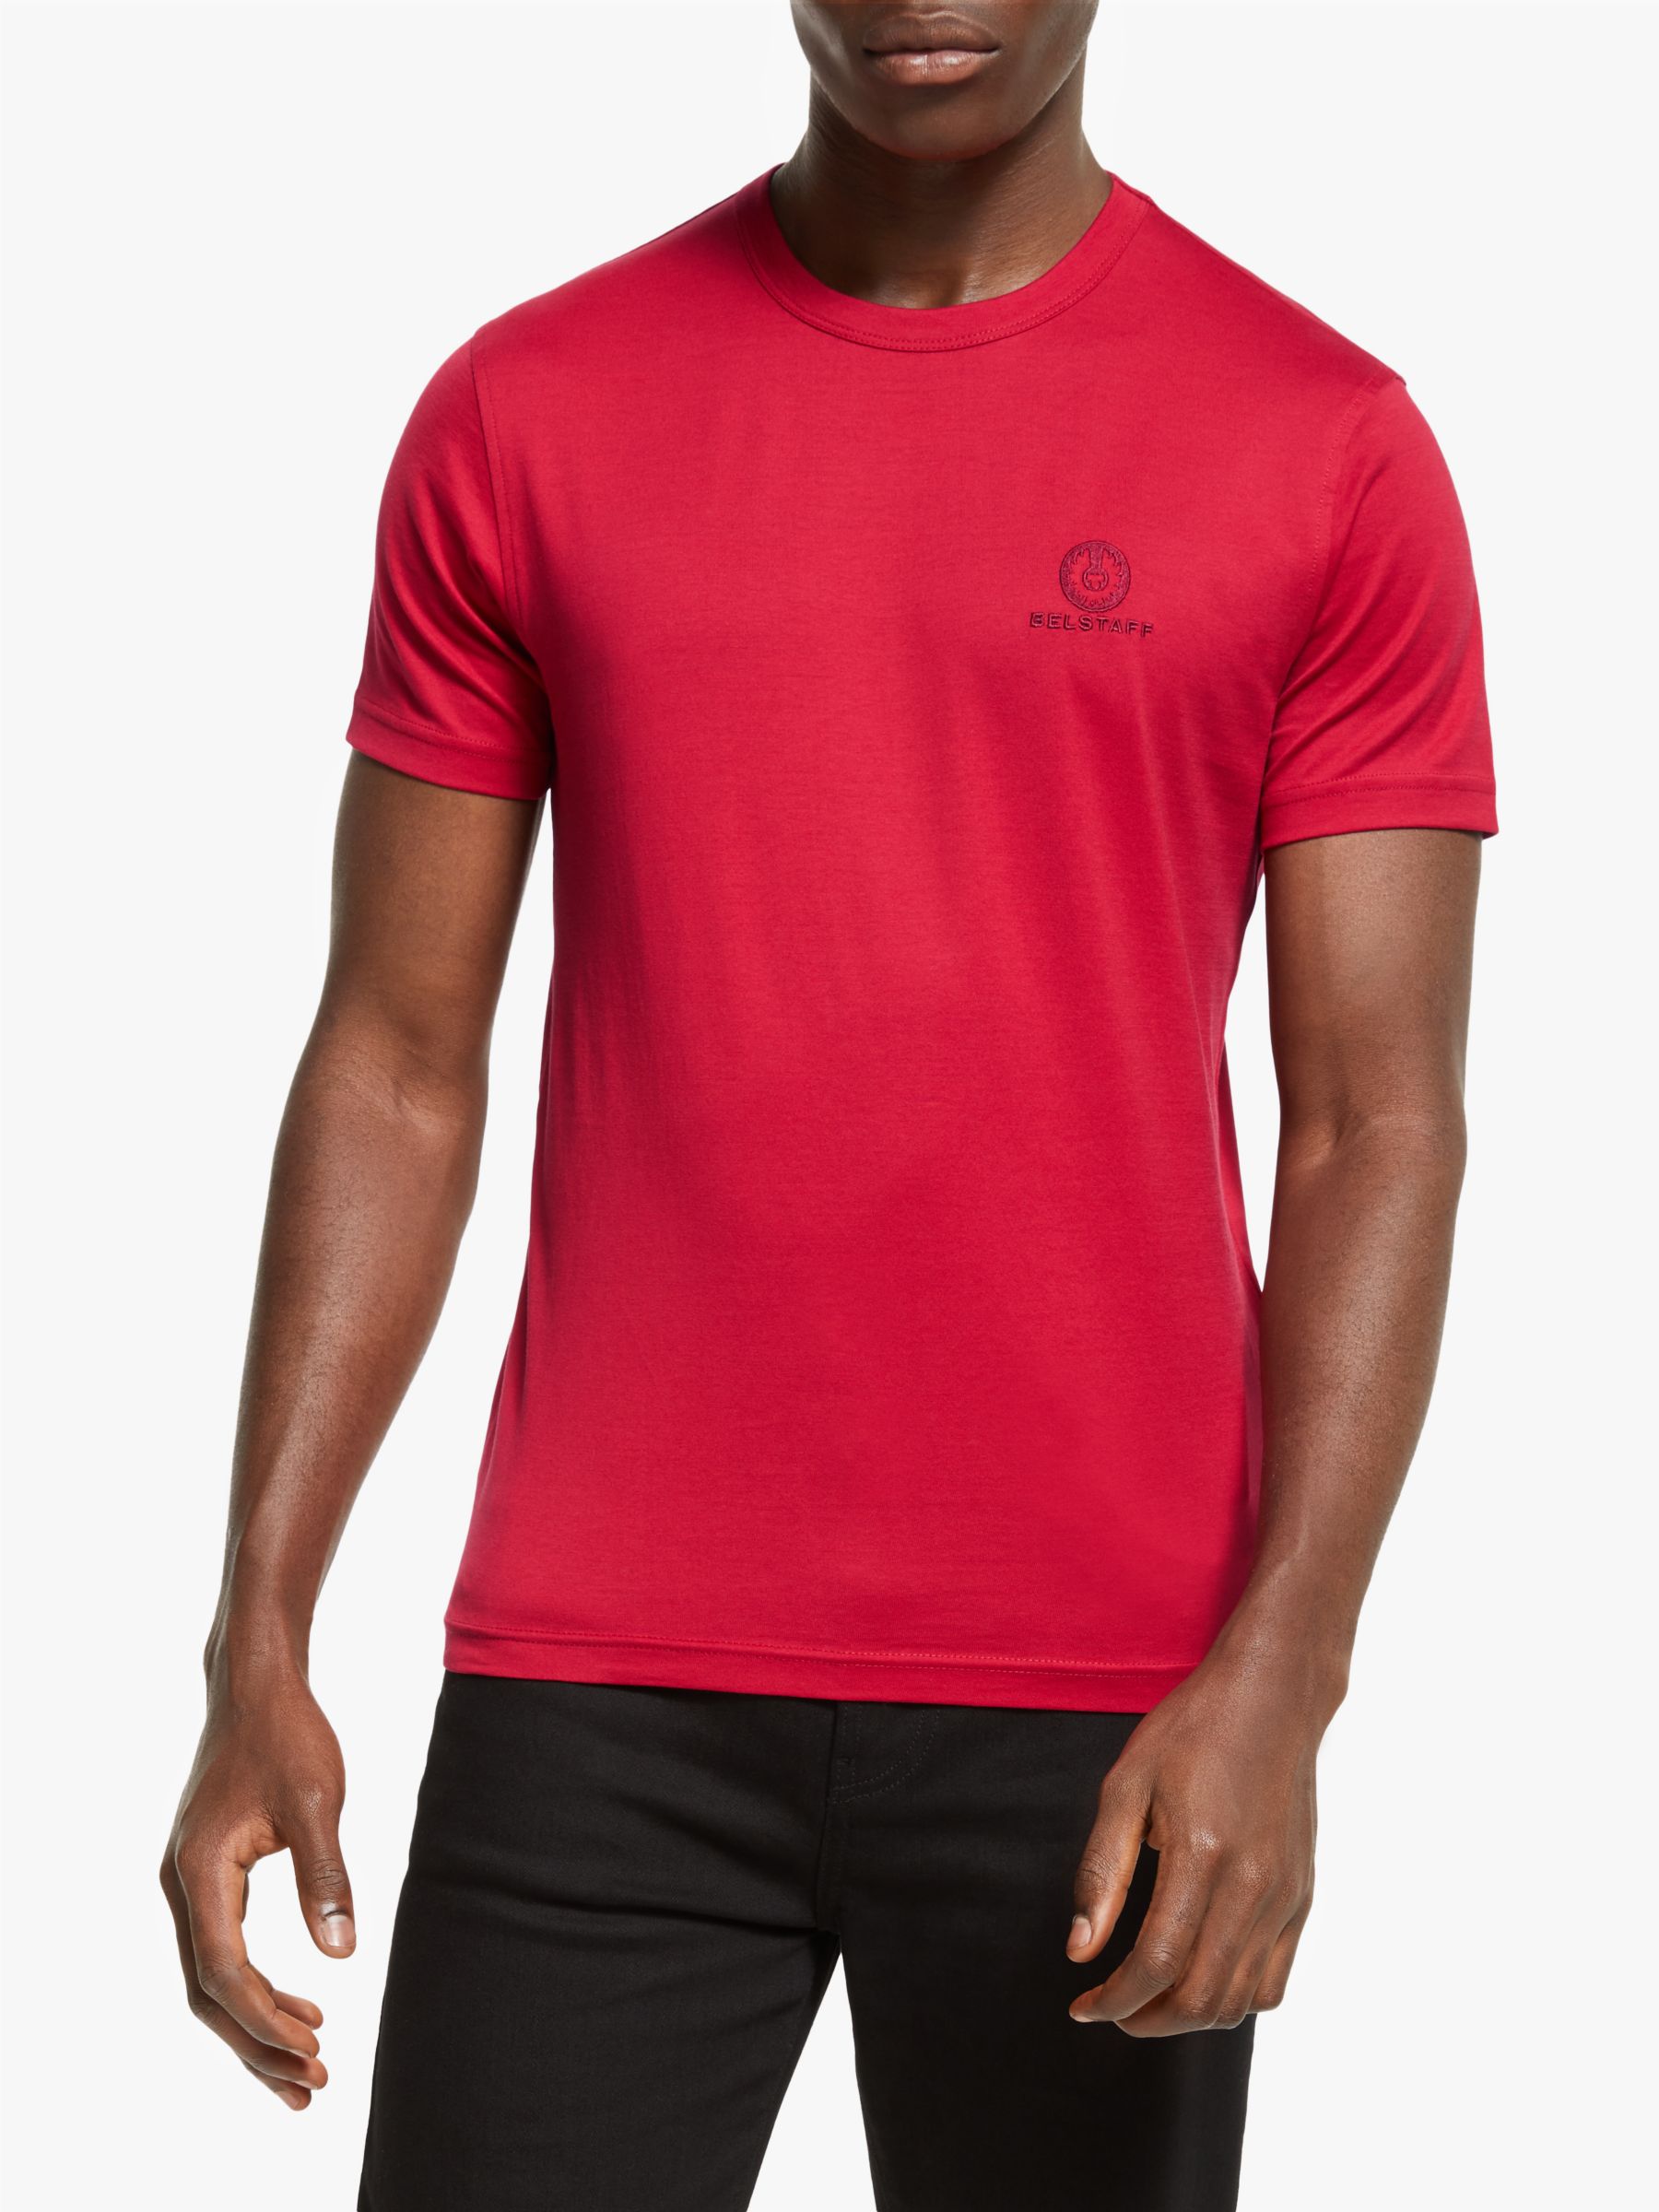 Belstaff Logo Crew Neck T-Shirt, Belstaff Red